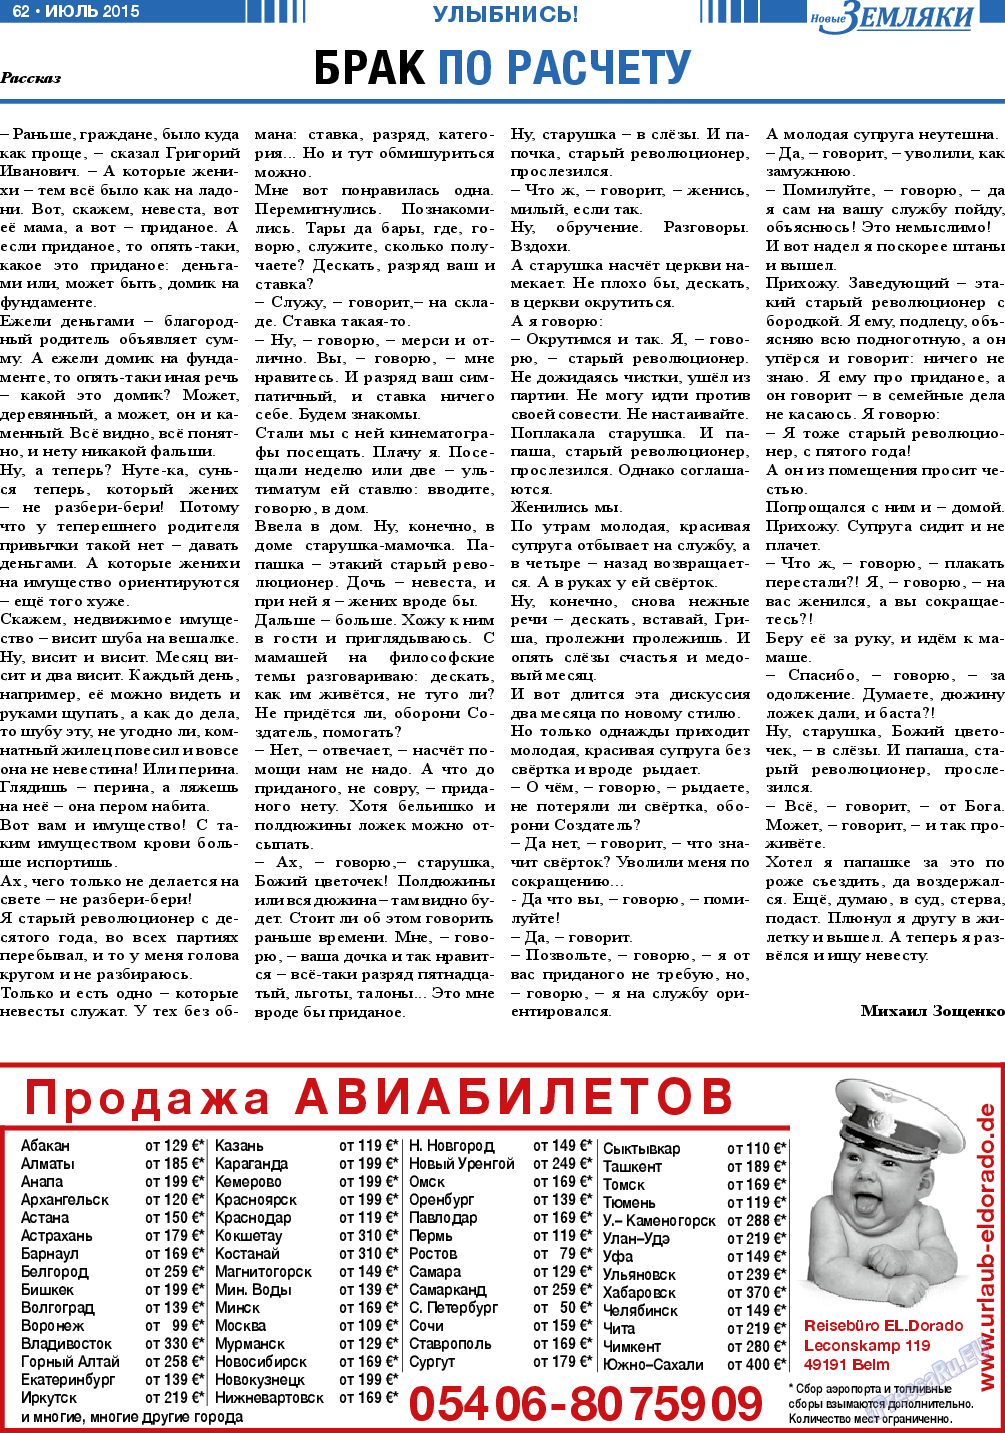 Новые Земляки, газета. 2015 №7 стр.62